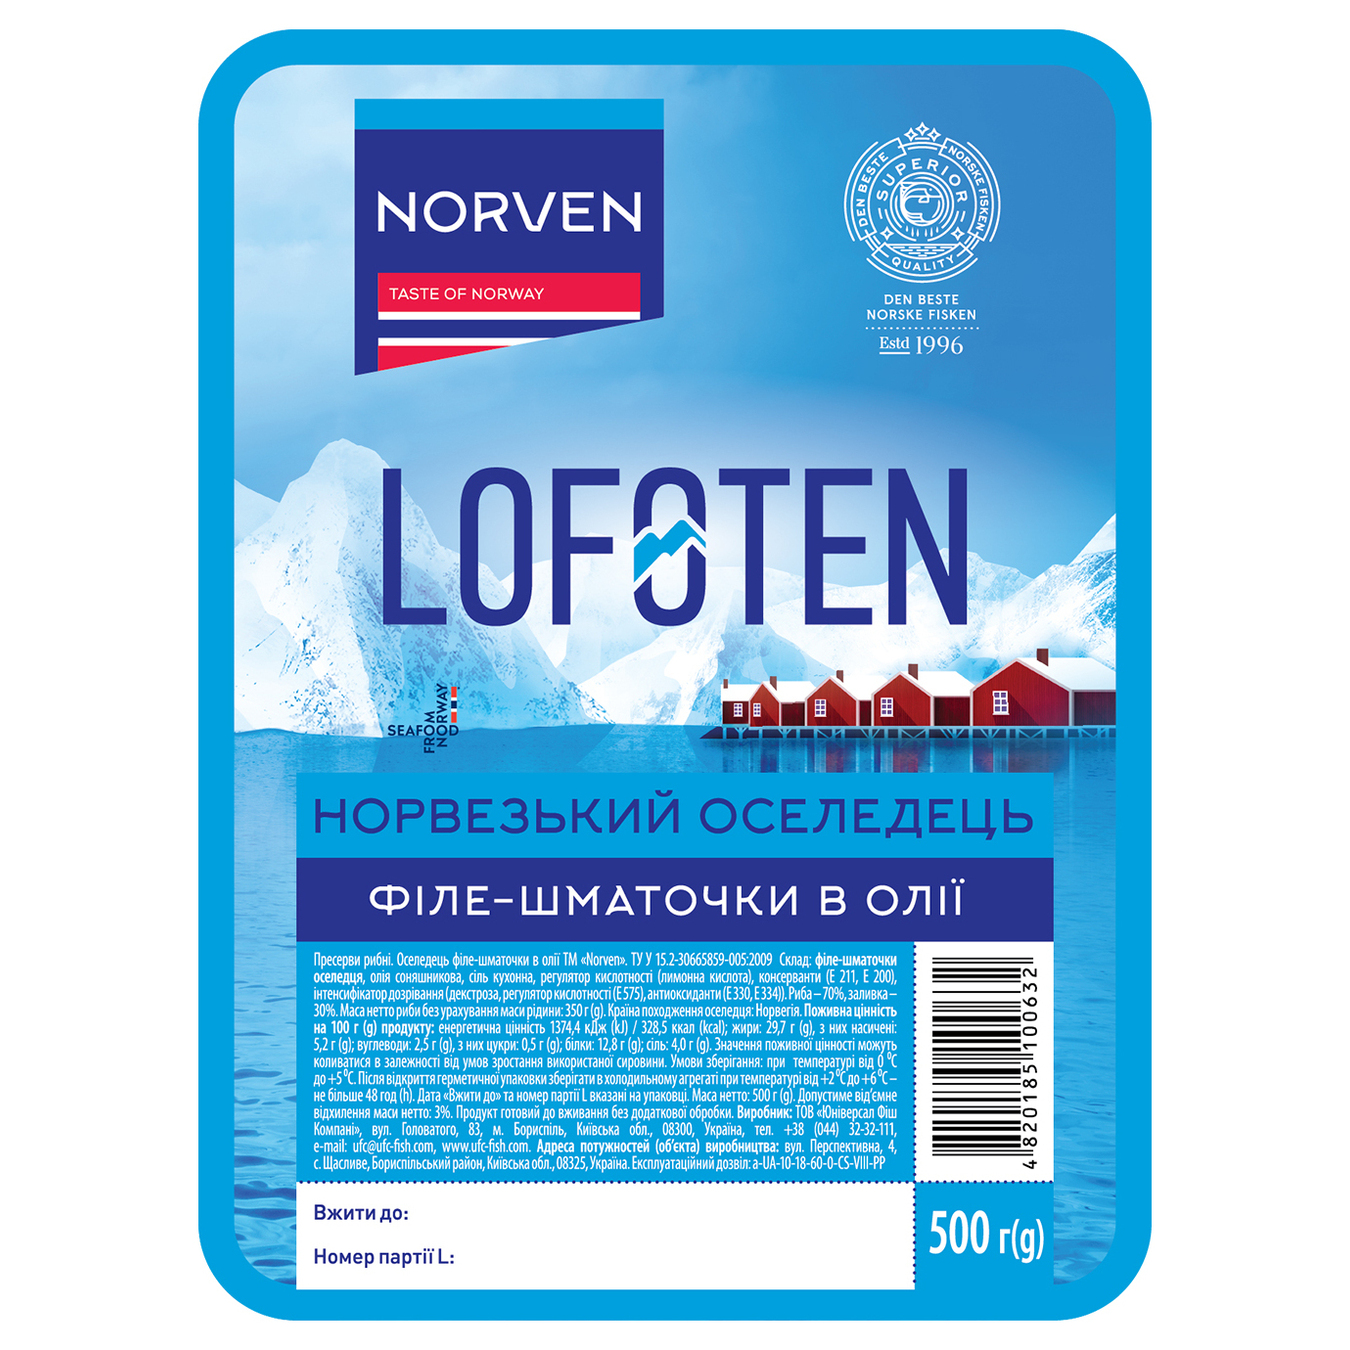 Norven Lofoten Herring Pieces in Oil 500g